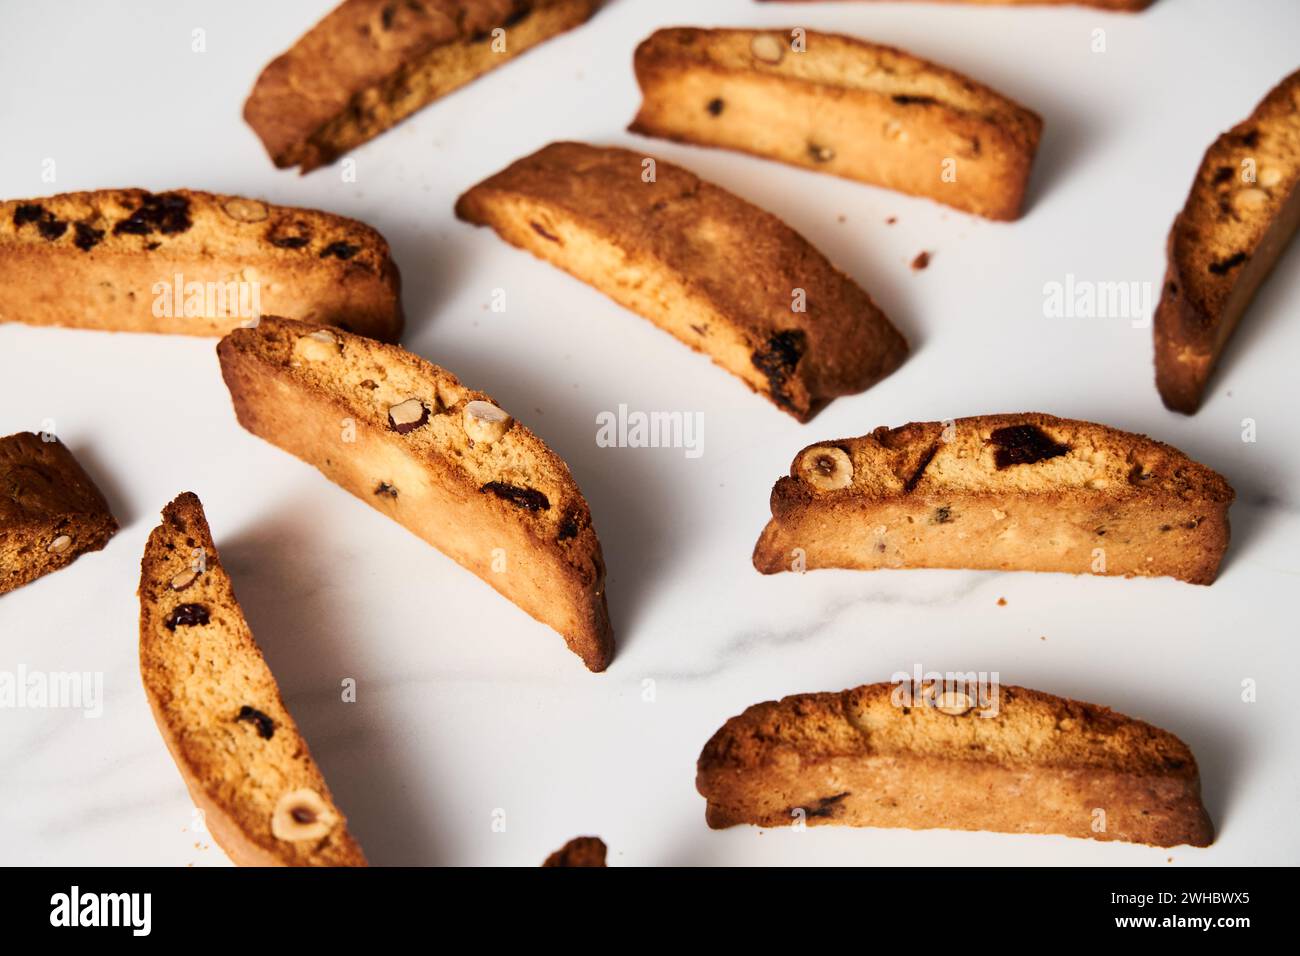 Primo piano di biscotti assortiti di mandorle, nocciole e mirtilli, disposti su sfondo bianco Foto Stock